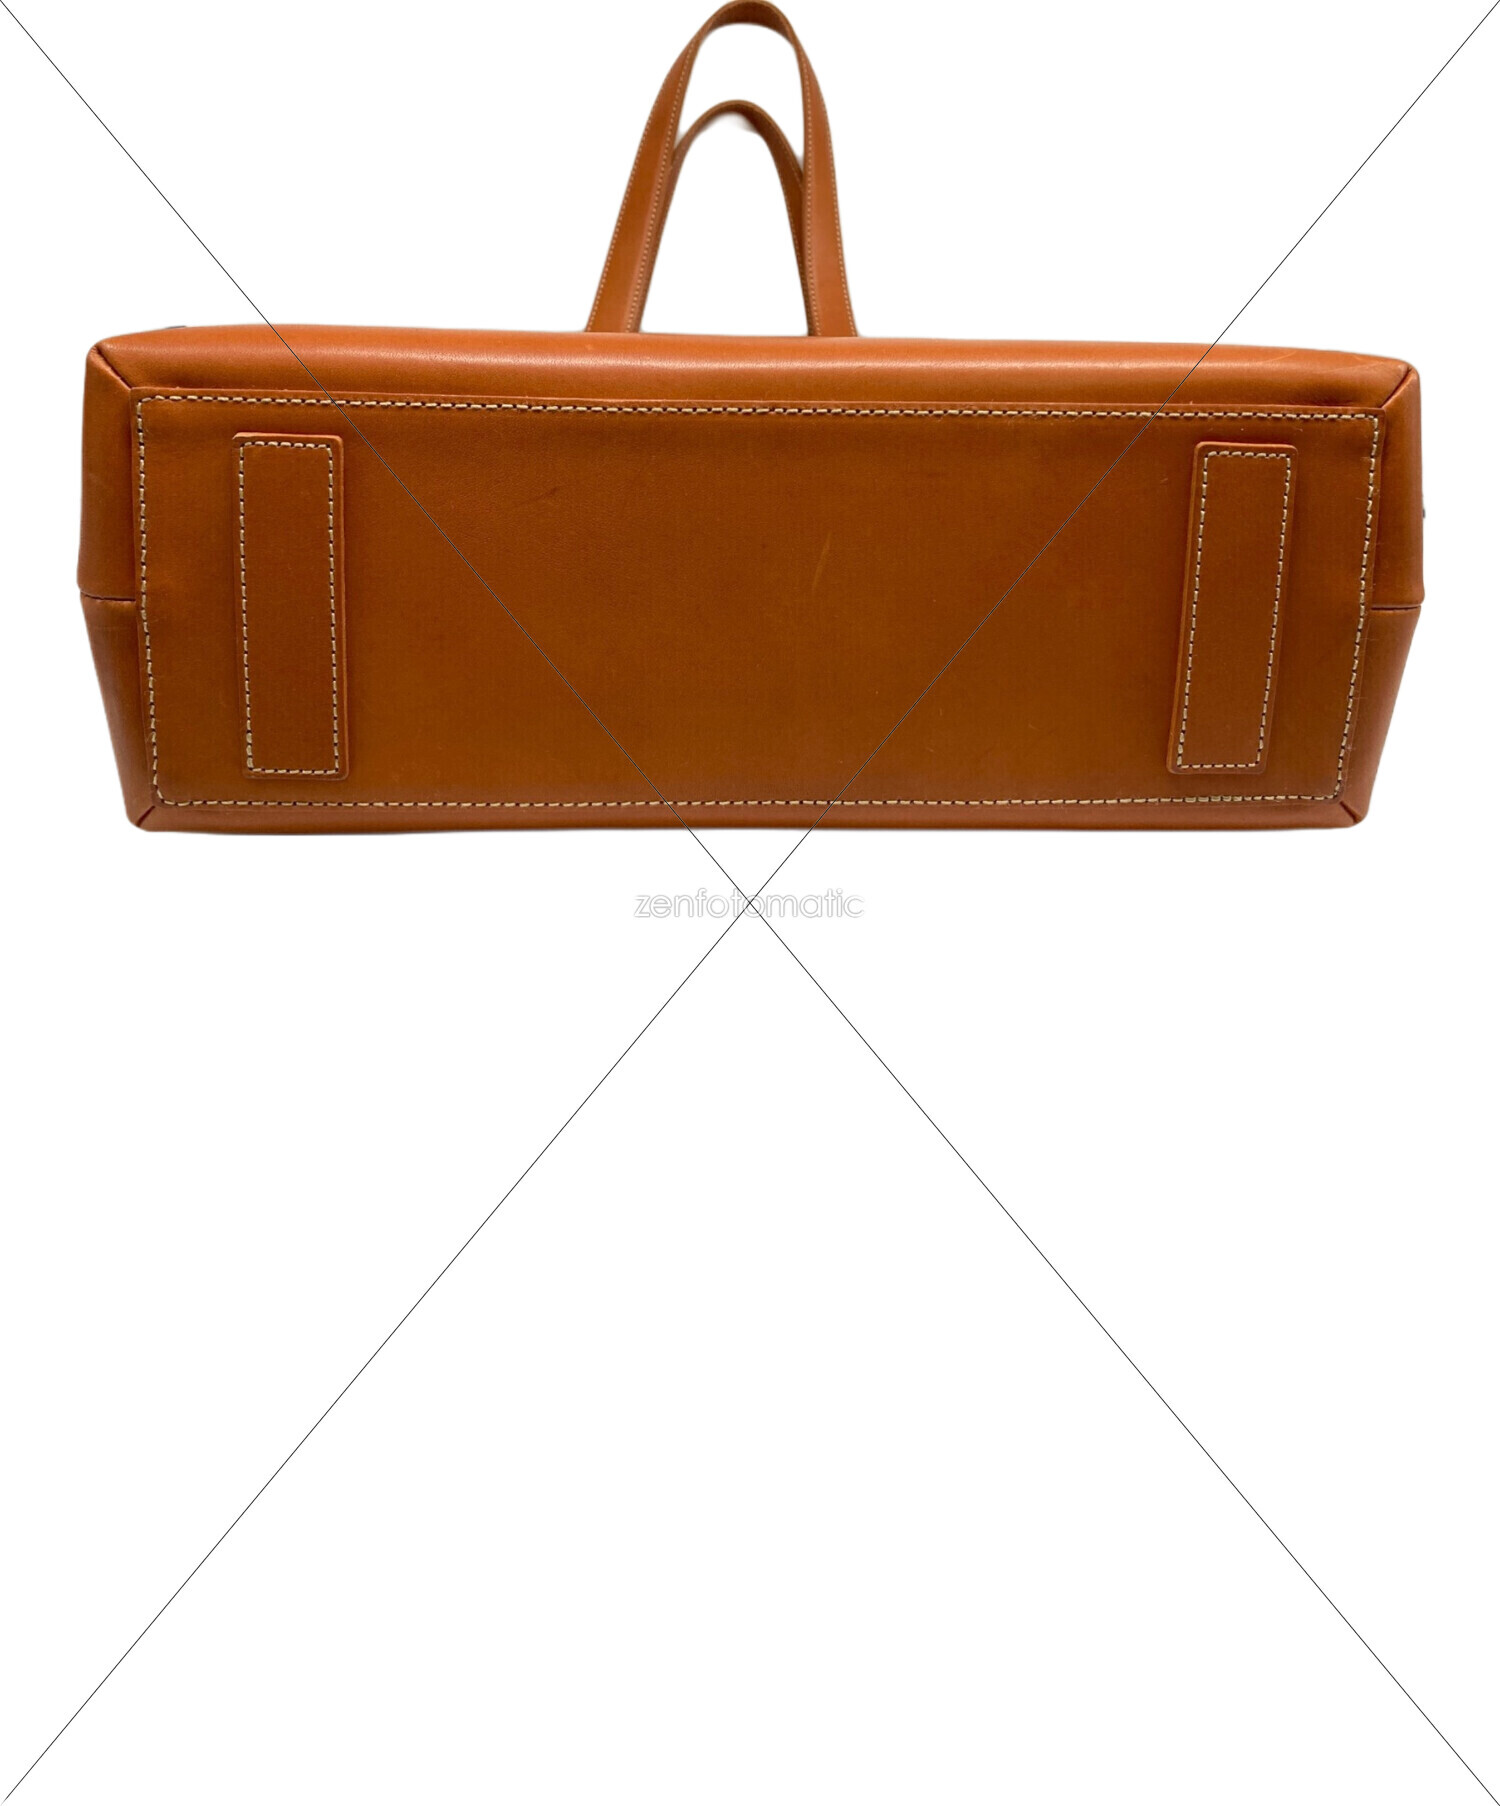 土屋鞄 (ツチヤカバン) レザートートバッグ オレンジ